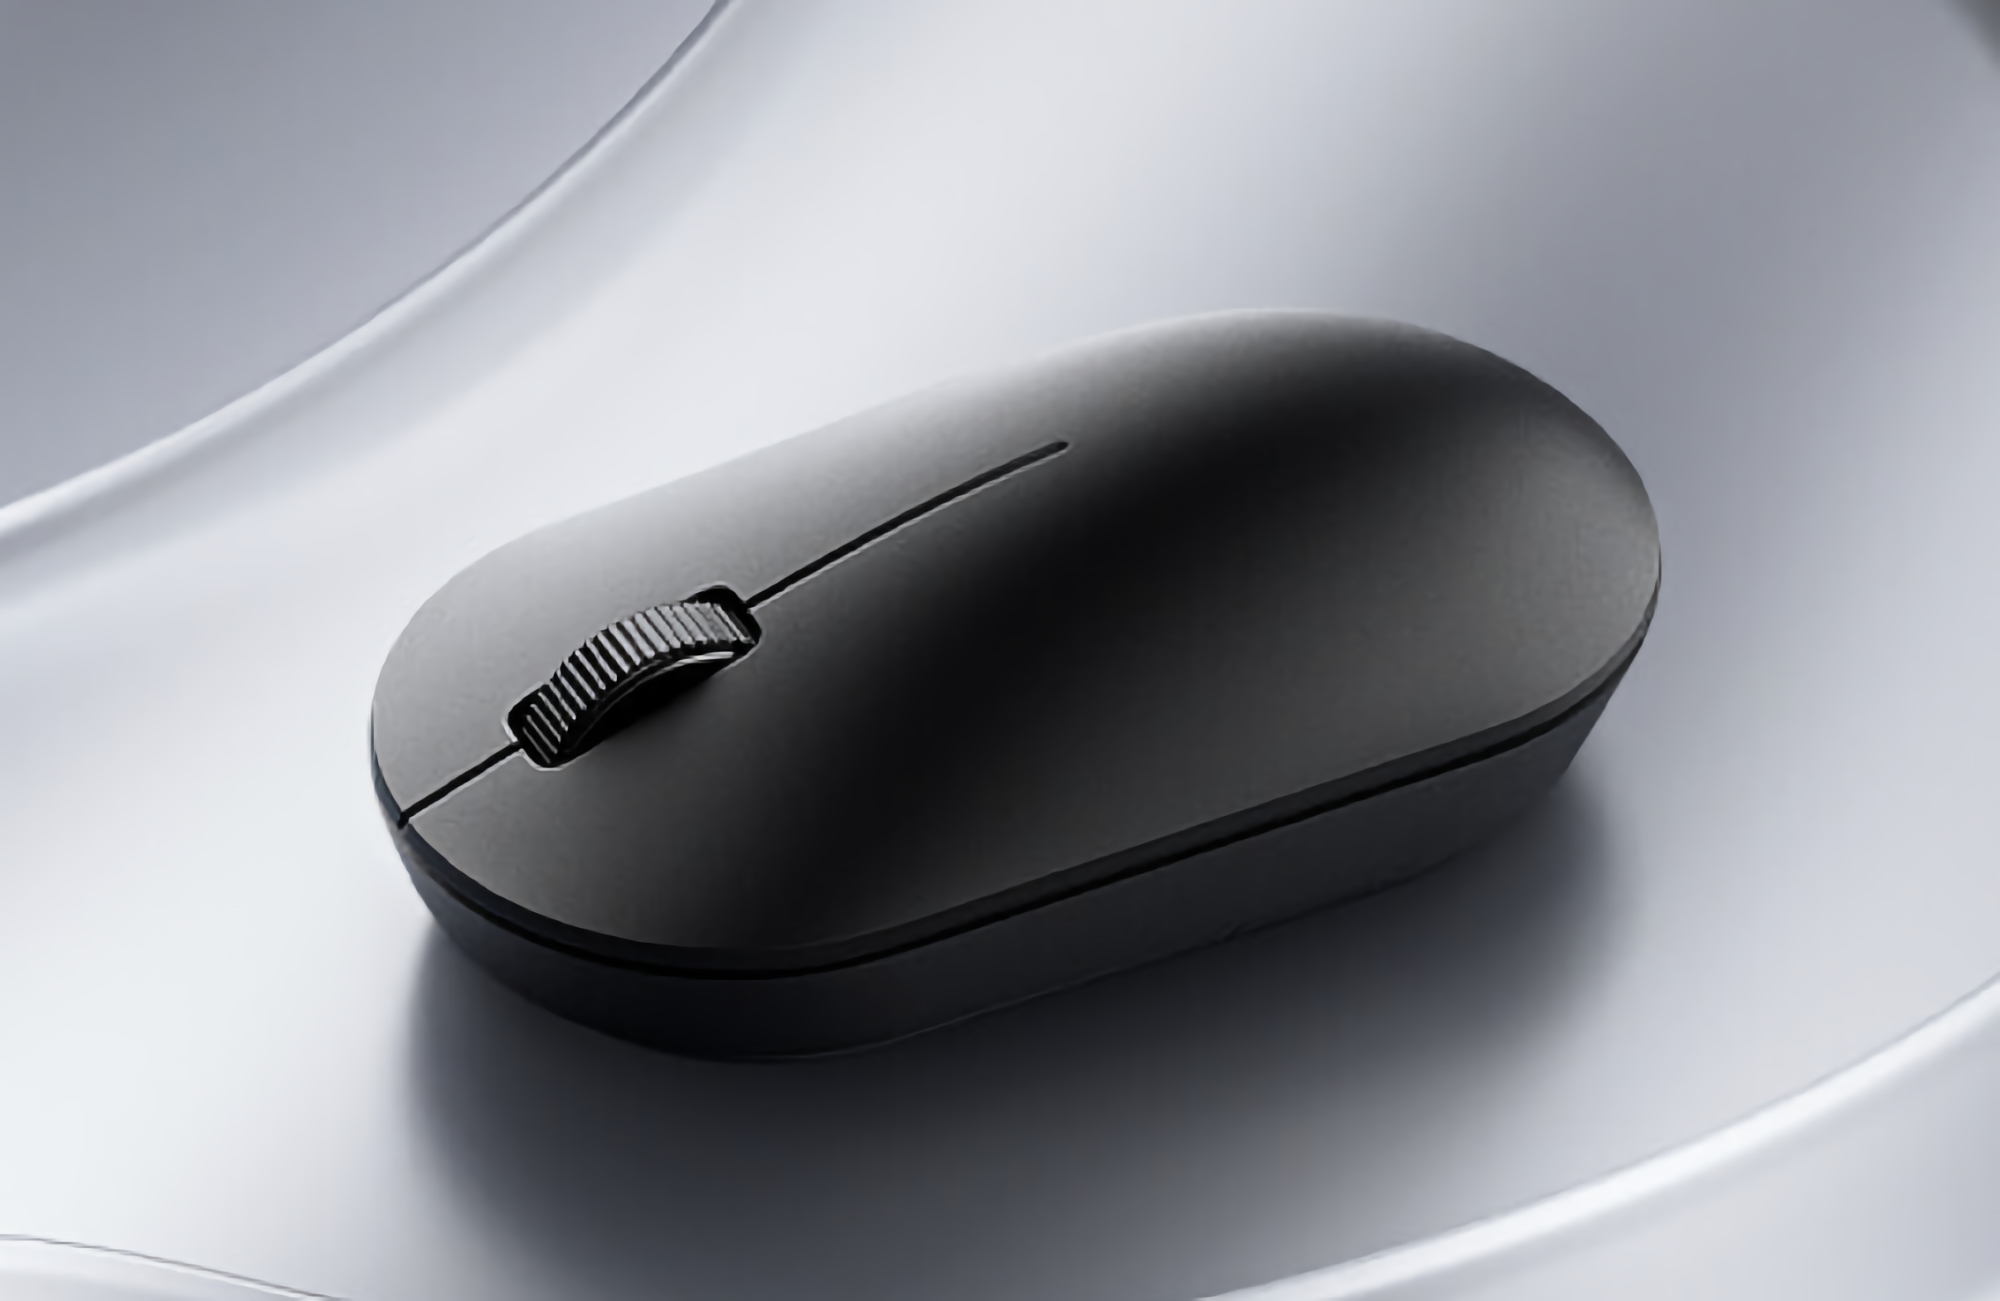 Xiaomi ha introdotto il mouse per computer Wireless Mouse Lite 2 per $ 6